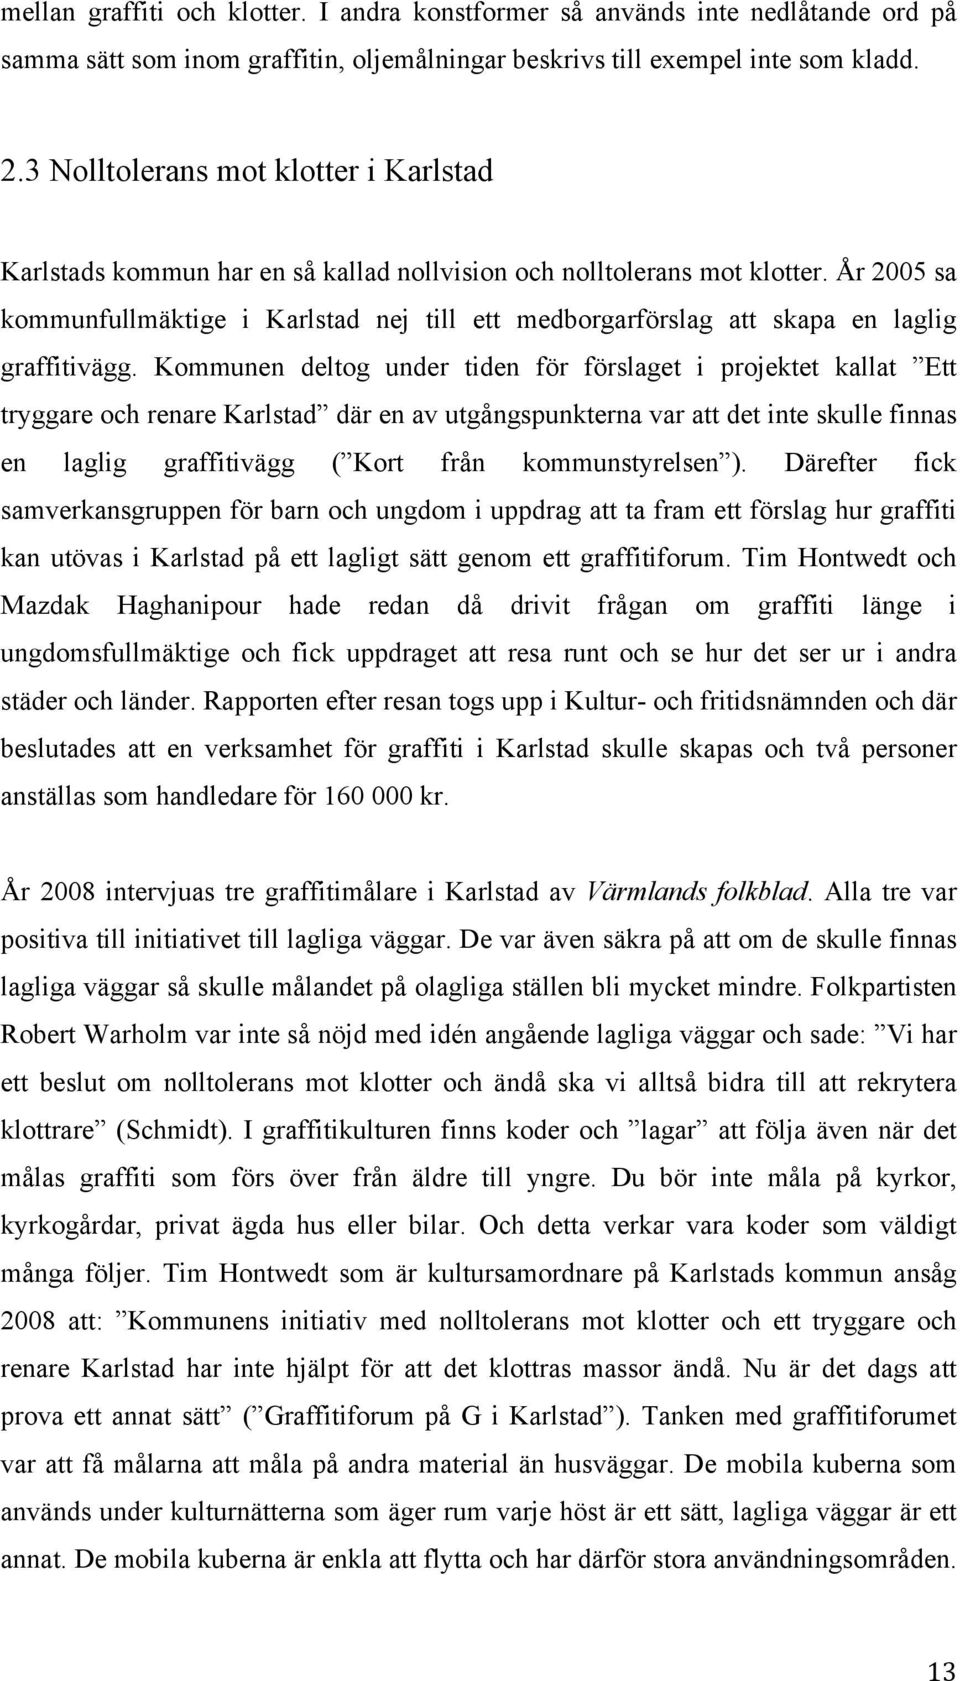 År 2005 sa kommunfullmäktige i Karlstad nej till ett medborgarförslag att skapa en laglig graffitivägg.